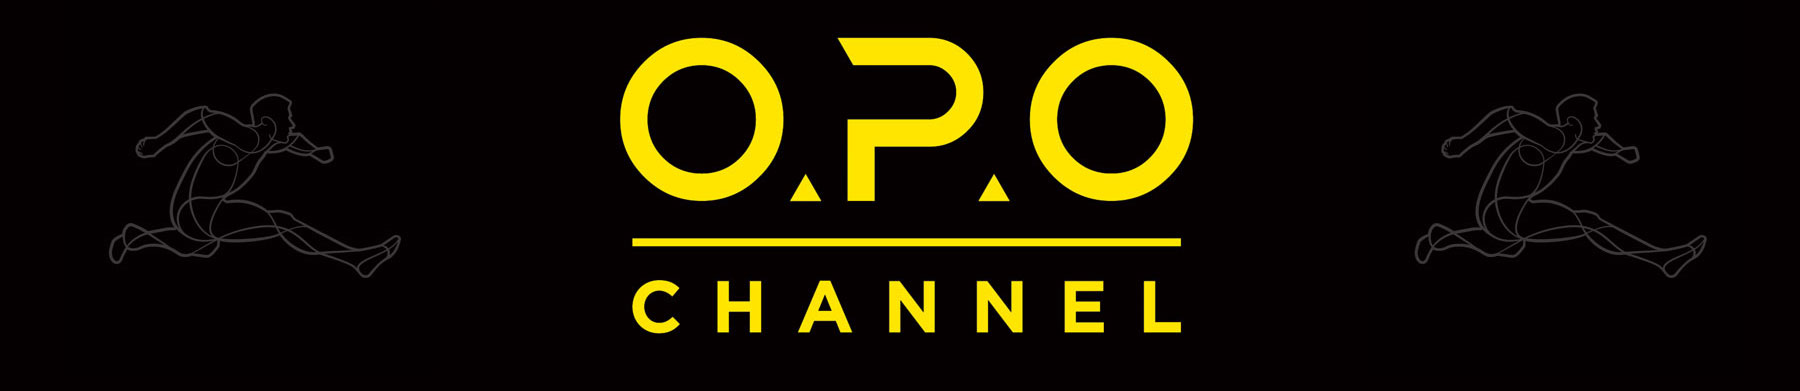 El canal O.P.O